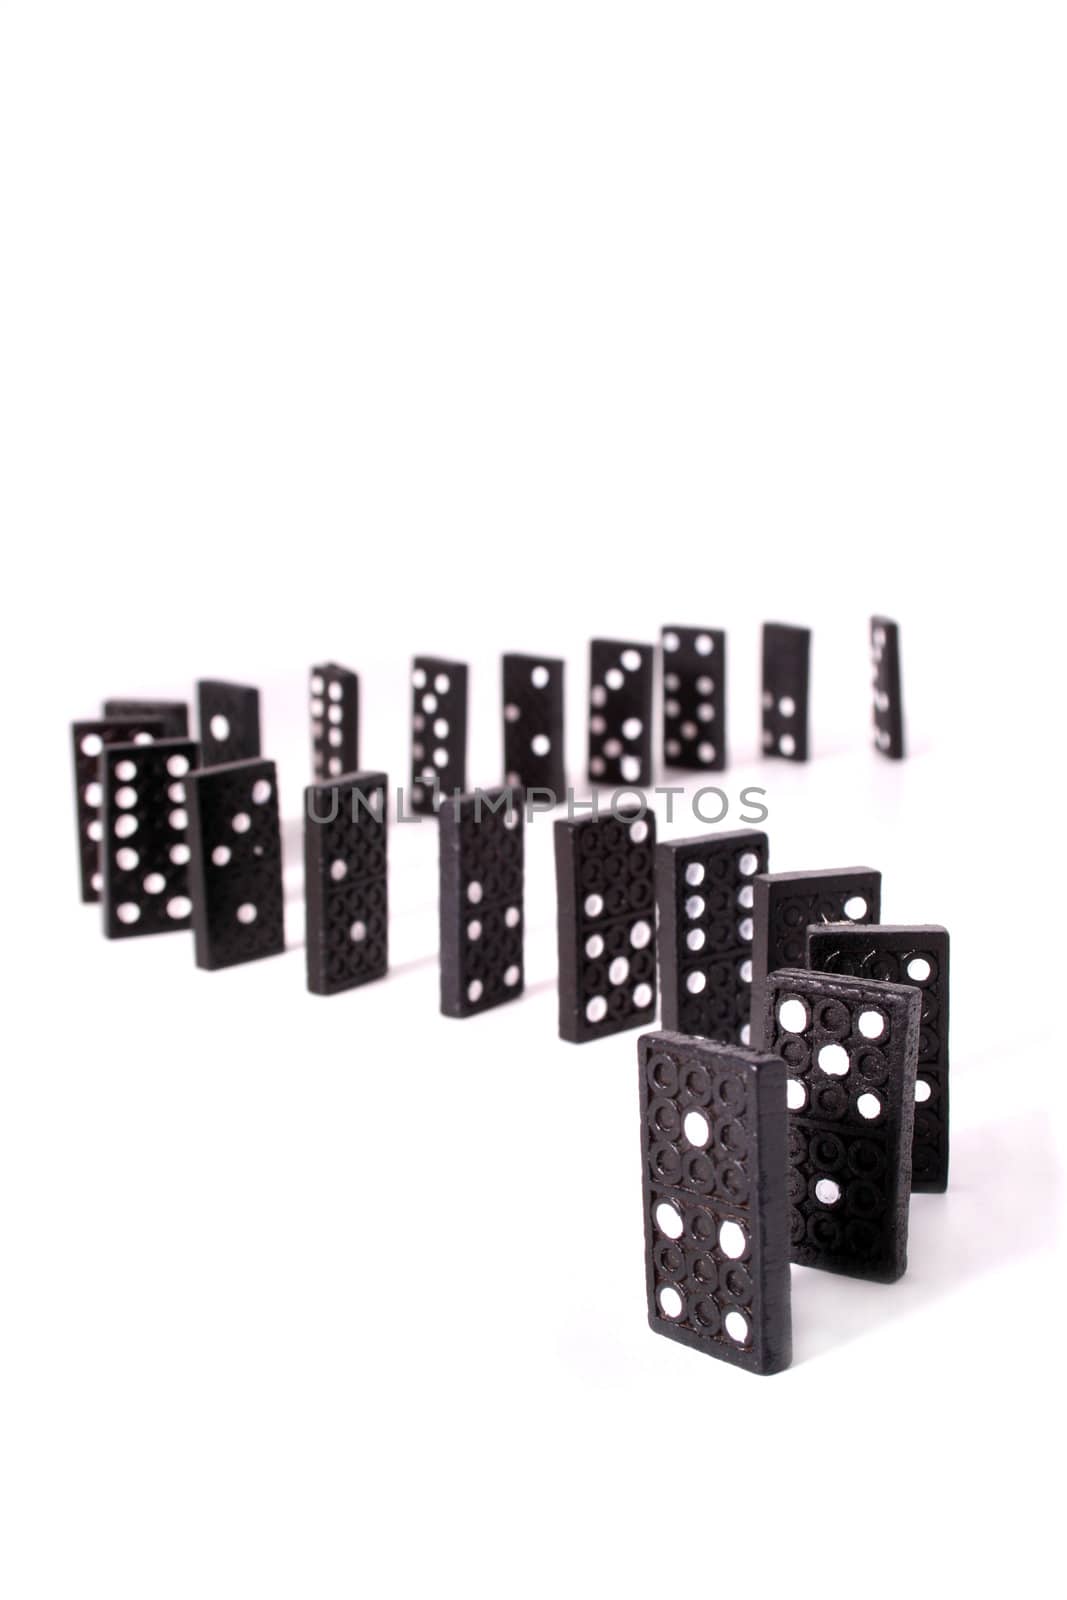 Several Dominoes by kaarsten